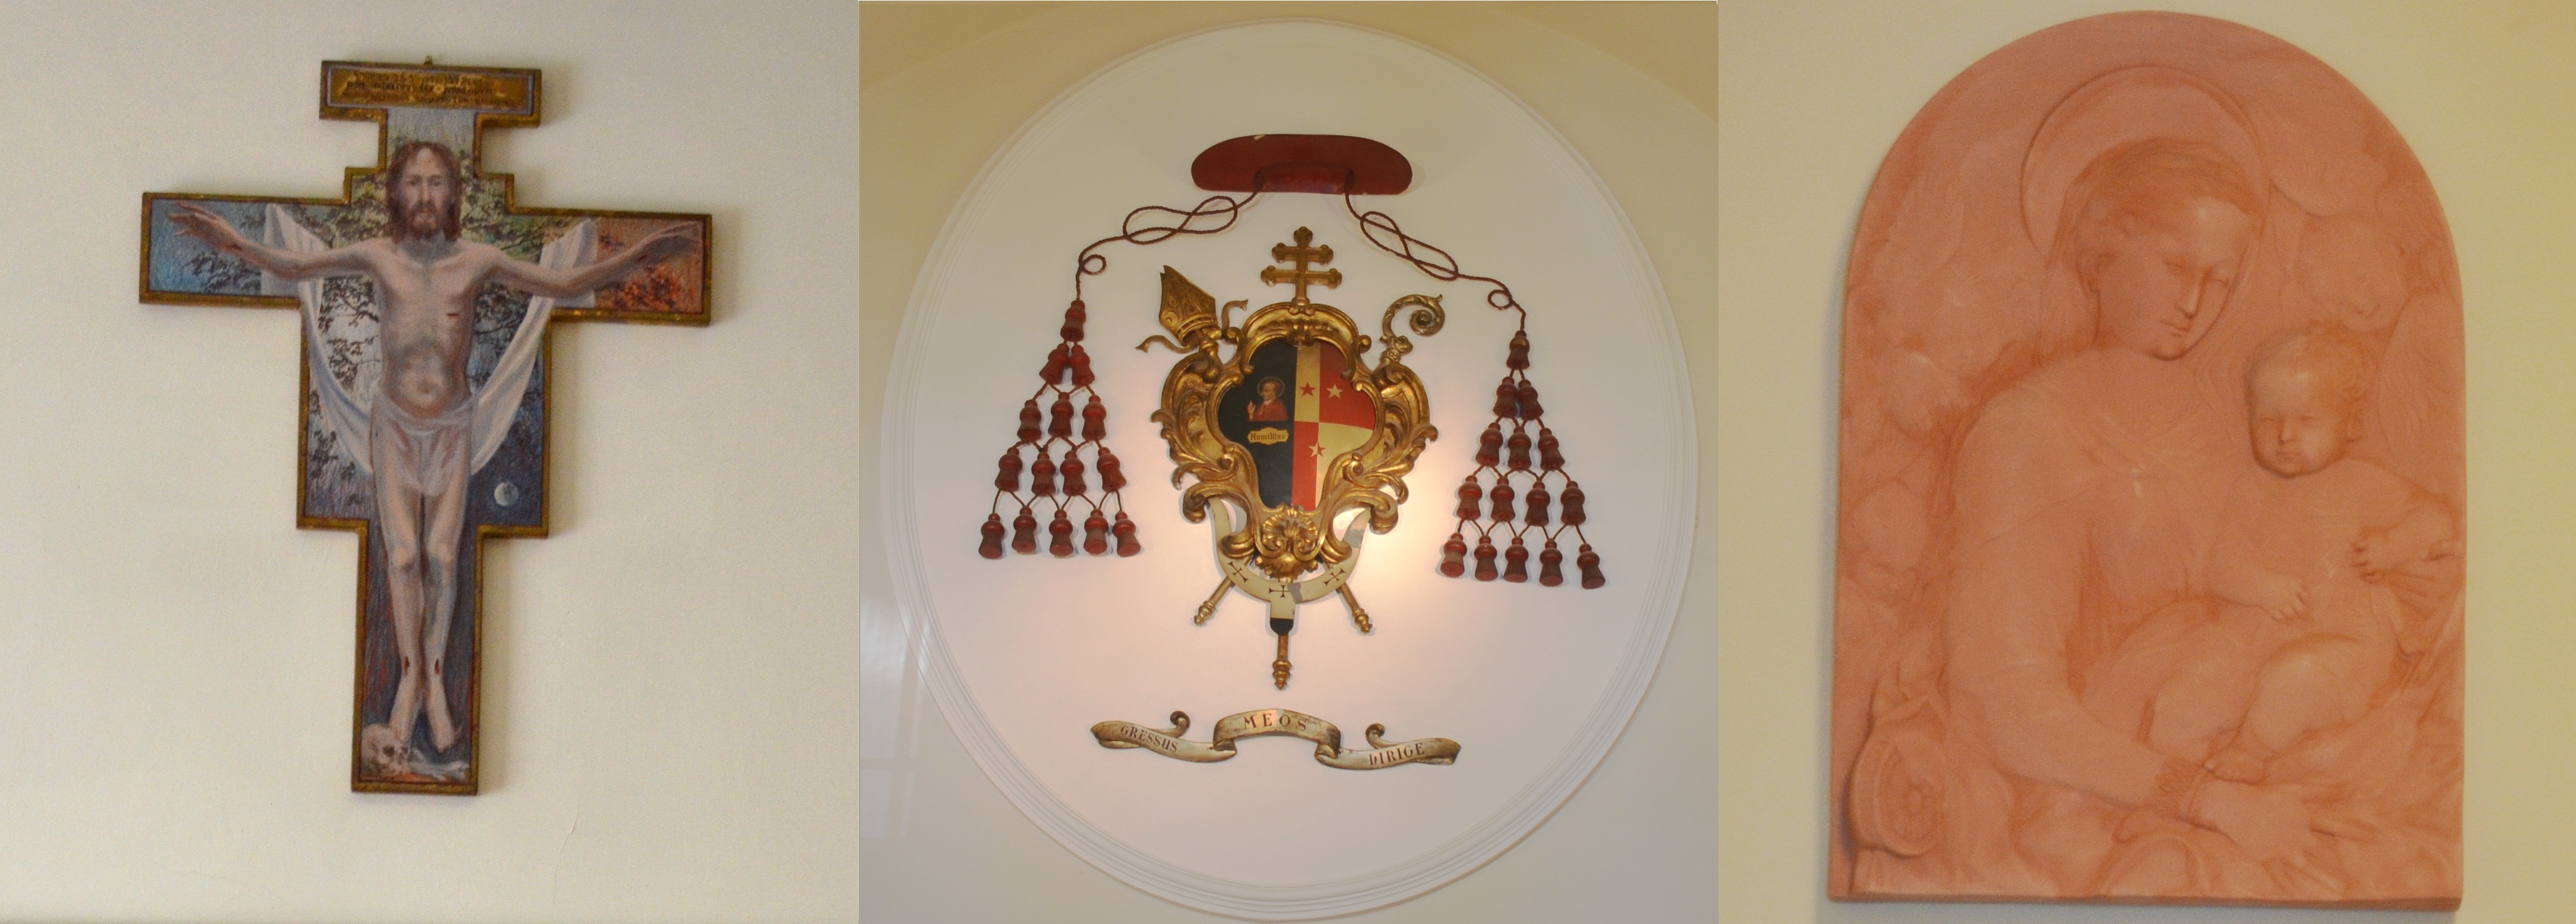 Tribunale Ecclesiastico Interdiocesano Piemontese